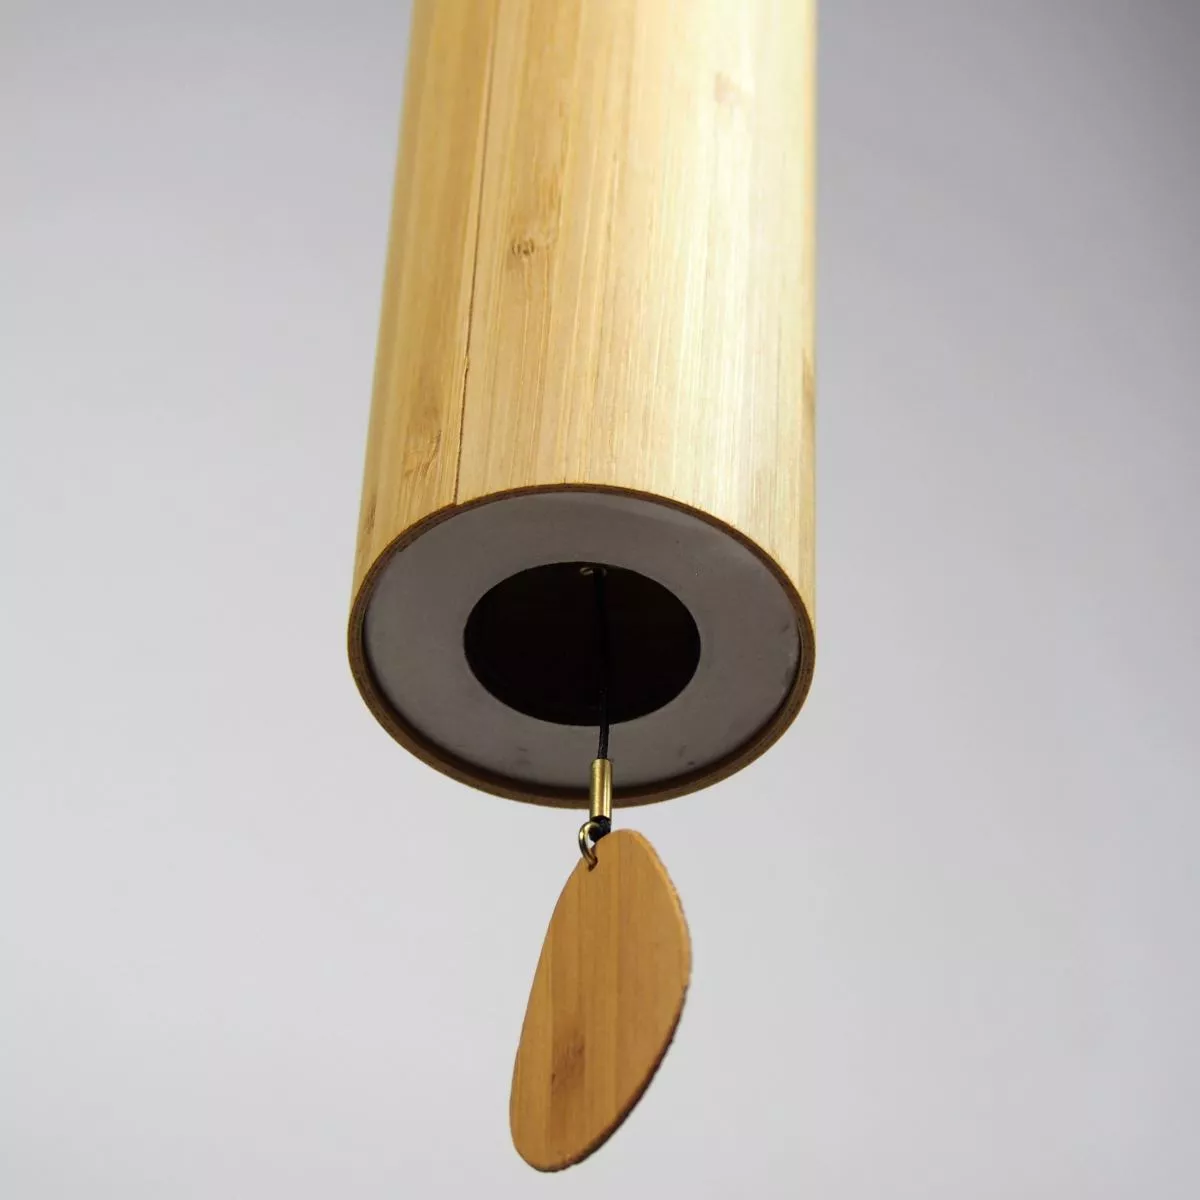 Handgefertigtes Klangspiel "Ignis" im Bambus-Zylinder